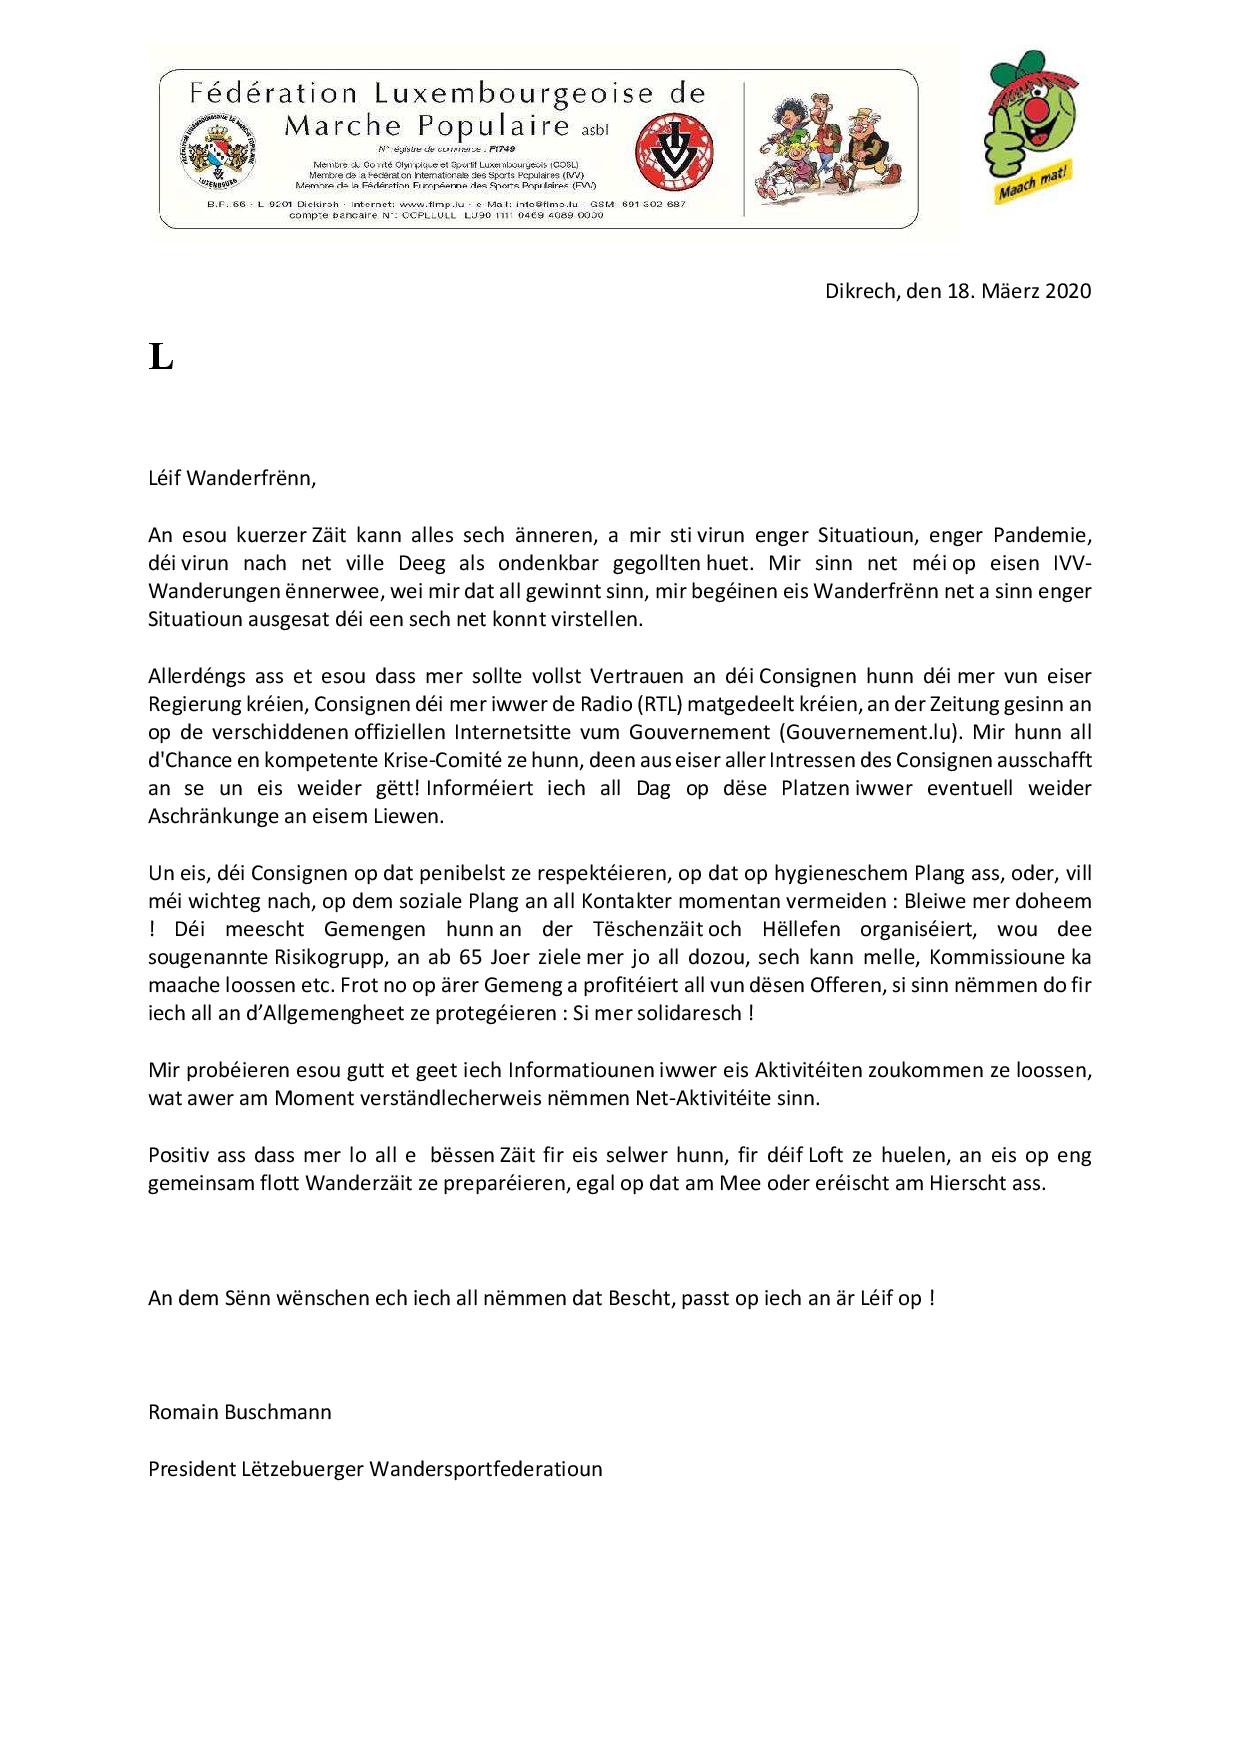 Hei ee Message vum Romain Buschmann, FLMP President